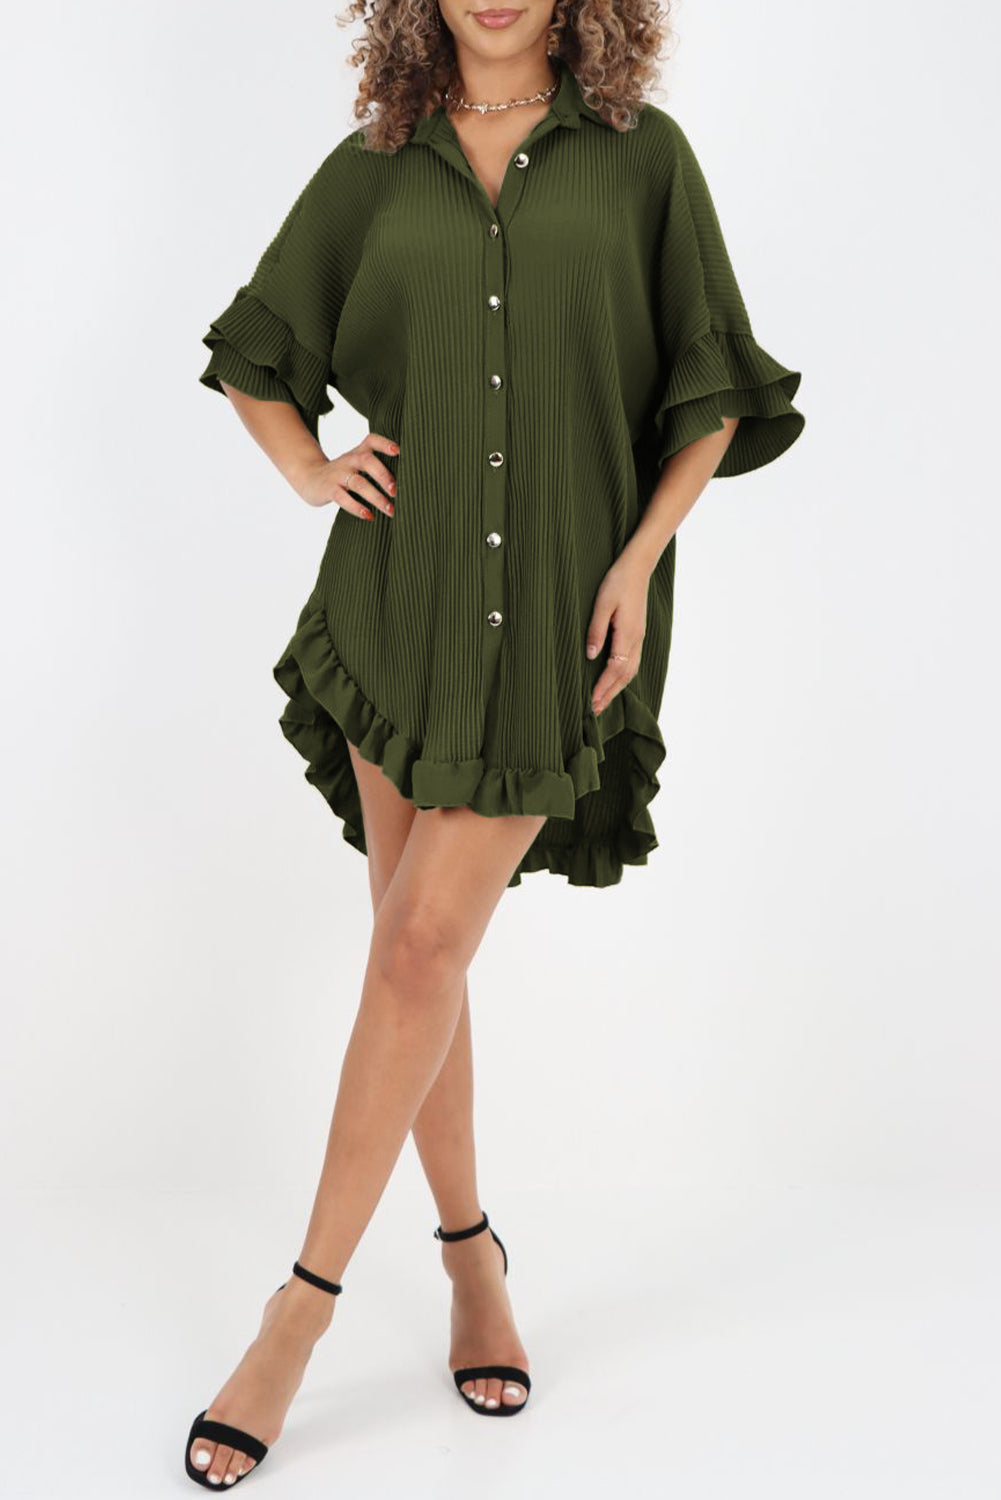 Moosgrünes, plissiertes Hemdkleid mit hohem Saum und Rüschenärmeln